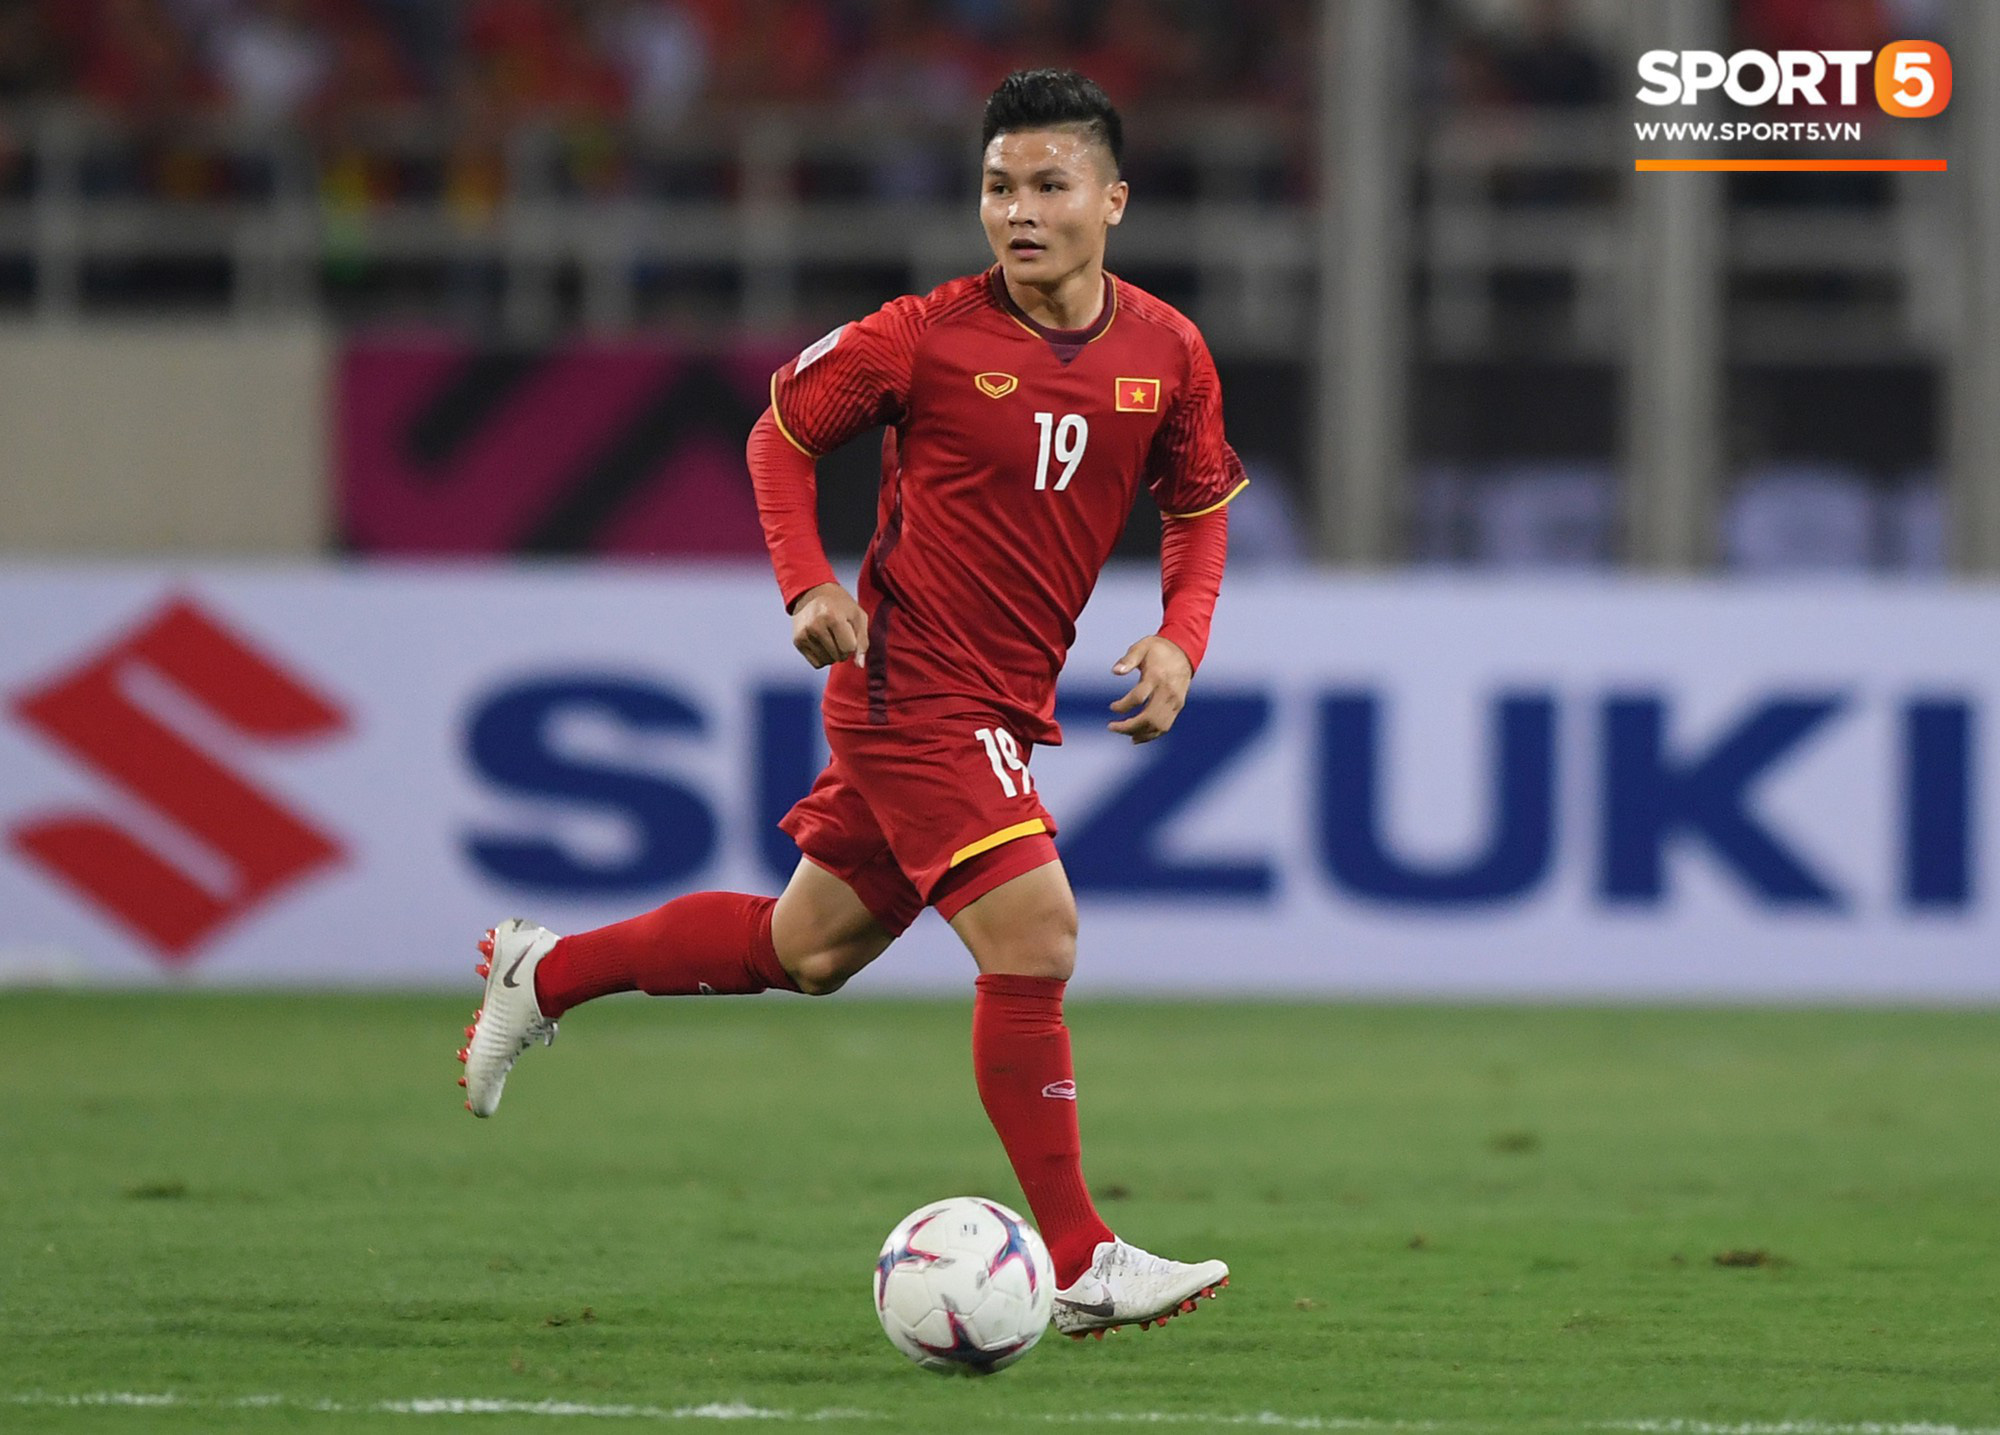 Quang Hải lọt đề cử cầu thủ xuất sắc nhất châu Á do tạp chí danh tiếng bình chọn, chung mâm với cả Son Heung-min - Ảnh 1.